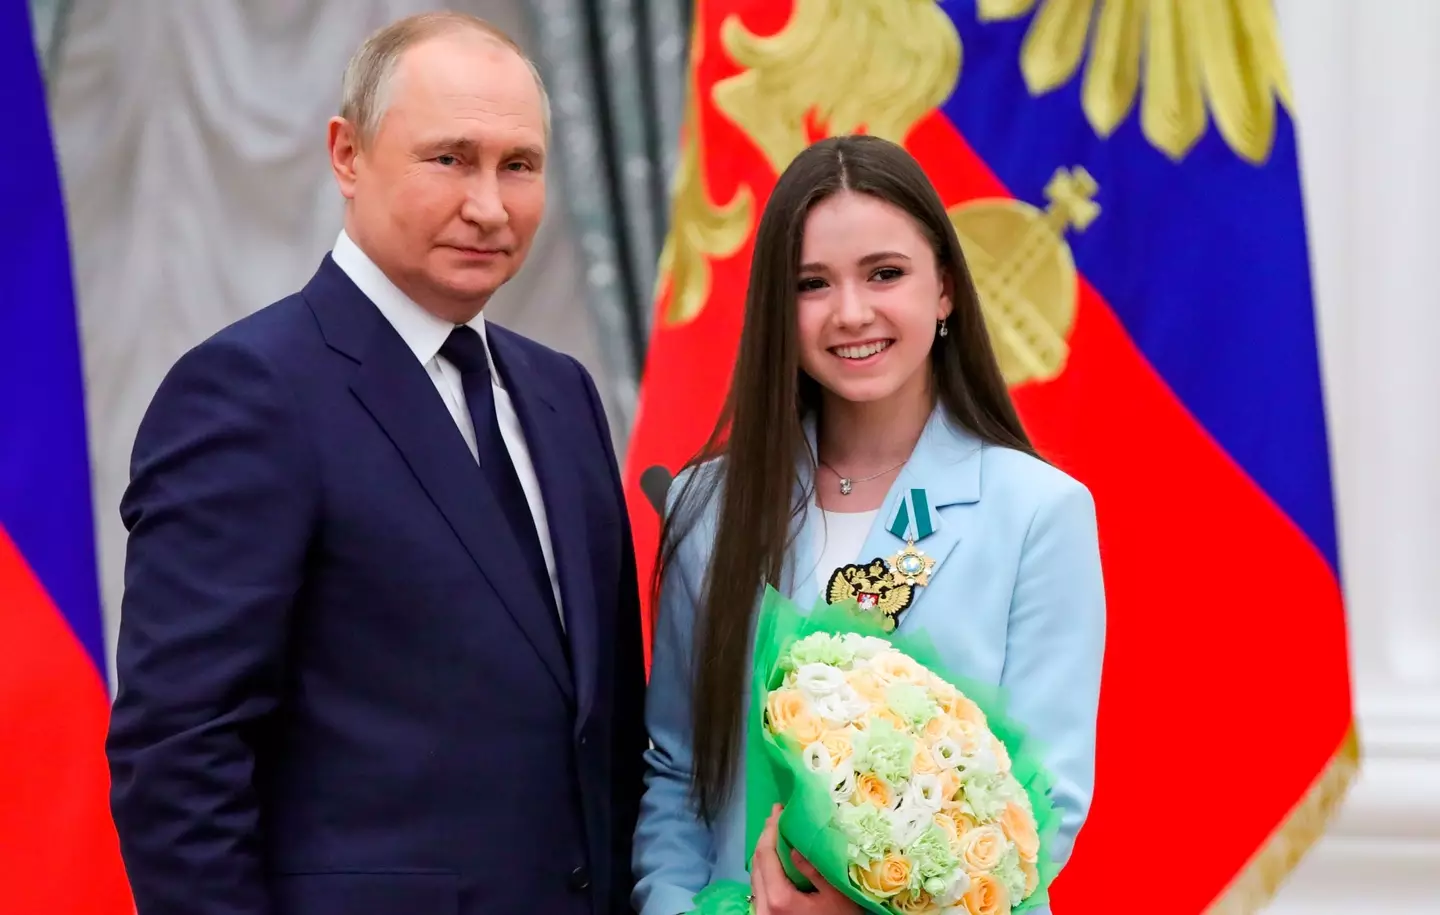 Vladimir Putin poses for a photo with Kamila Valieva.